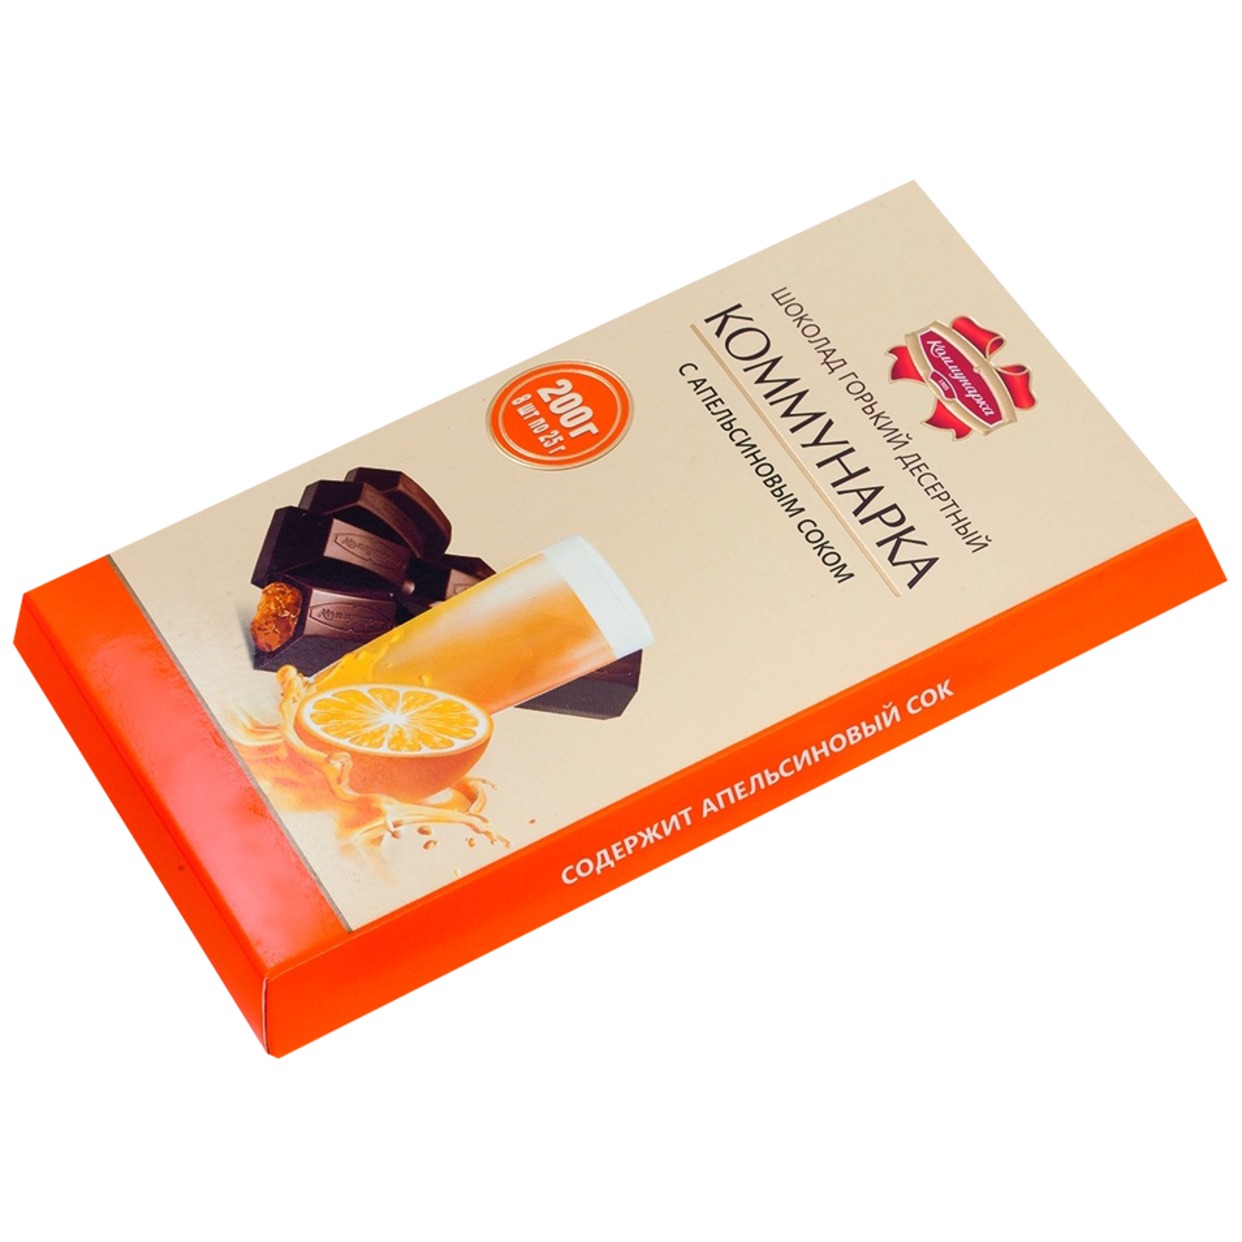 Шоколад Коммунарка, горький с апельсином, 200 г по акции в Пятерочке